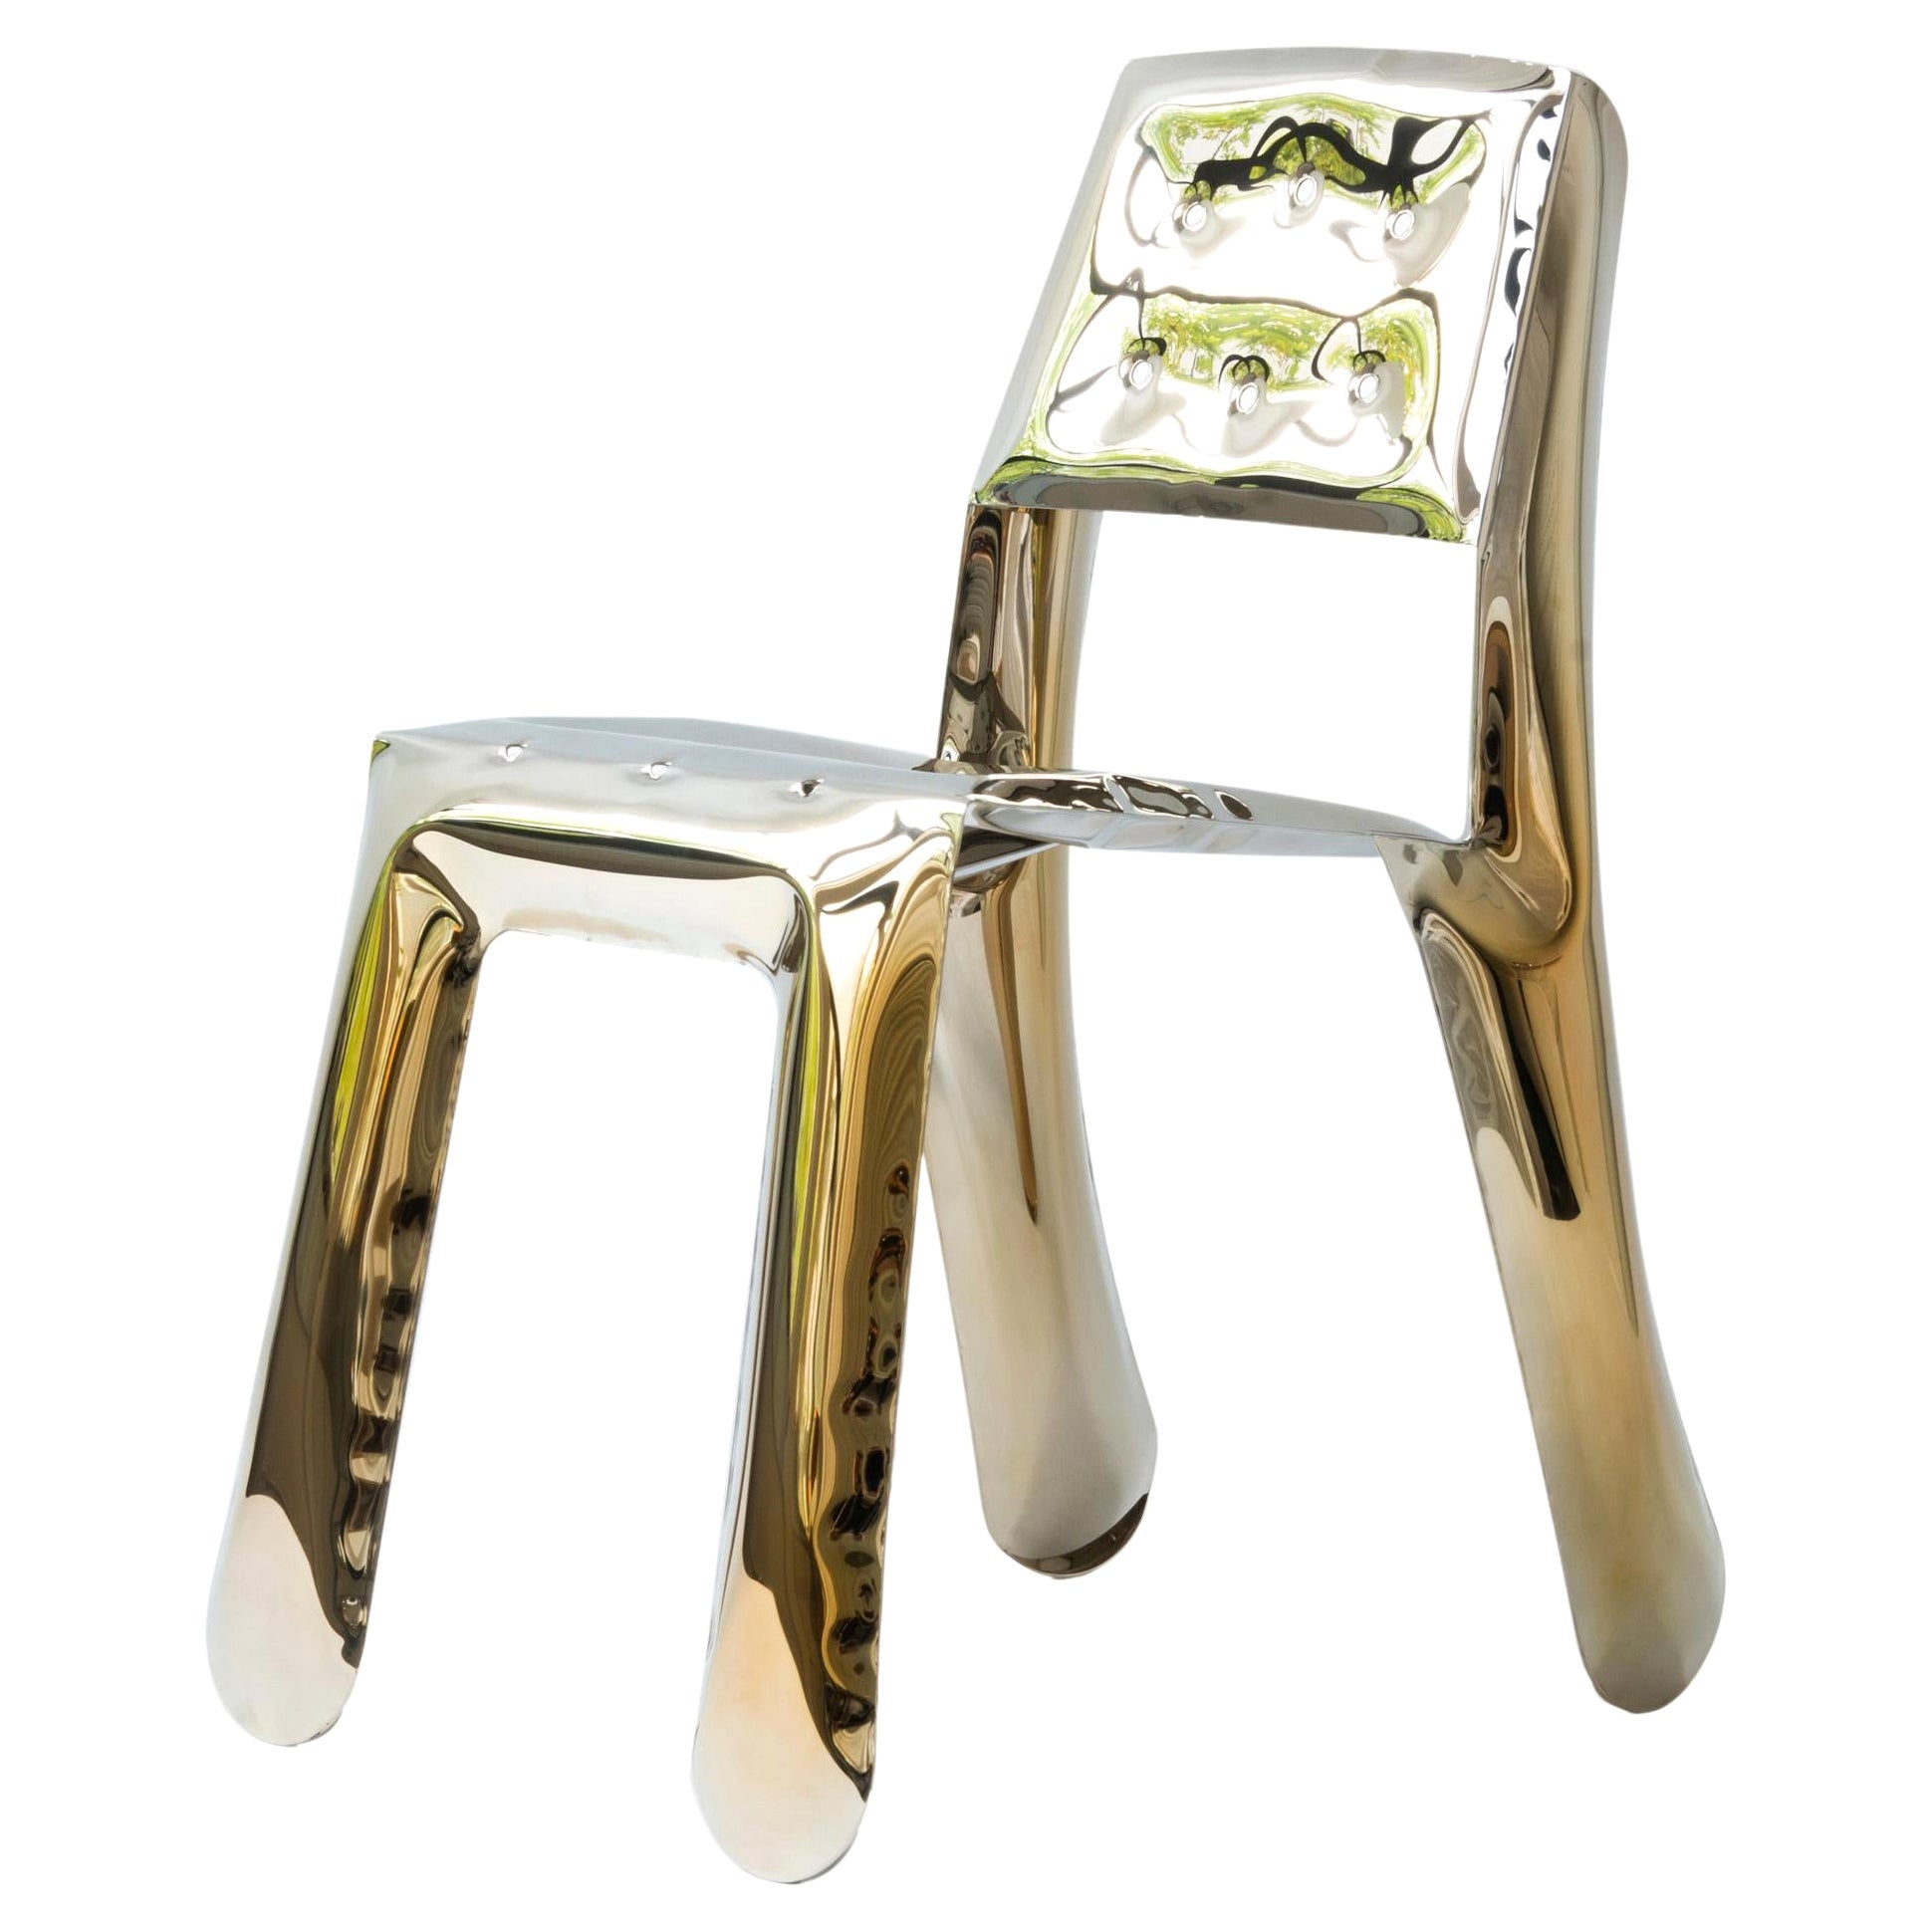 Flamed Gold Chippensteel 0.5 Sculptural Chair by Zieta